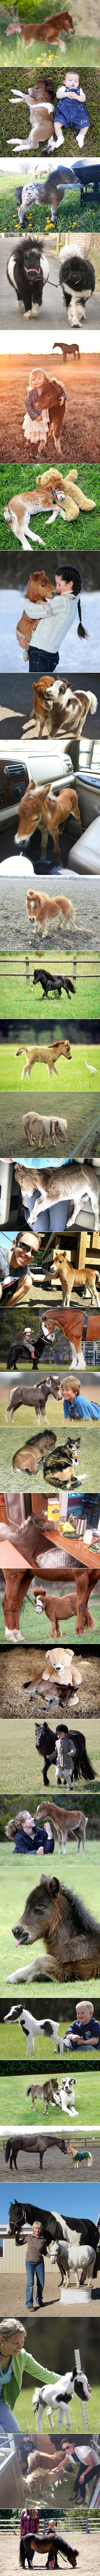 GALERIJA: Minijaturni konjići su čupavi i slatki do granice ludila!